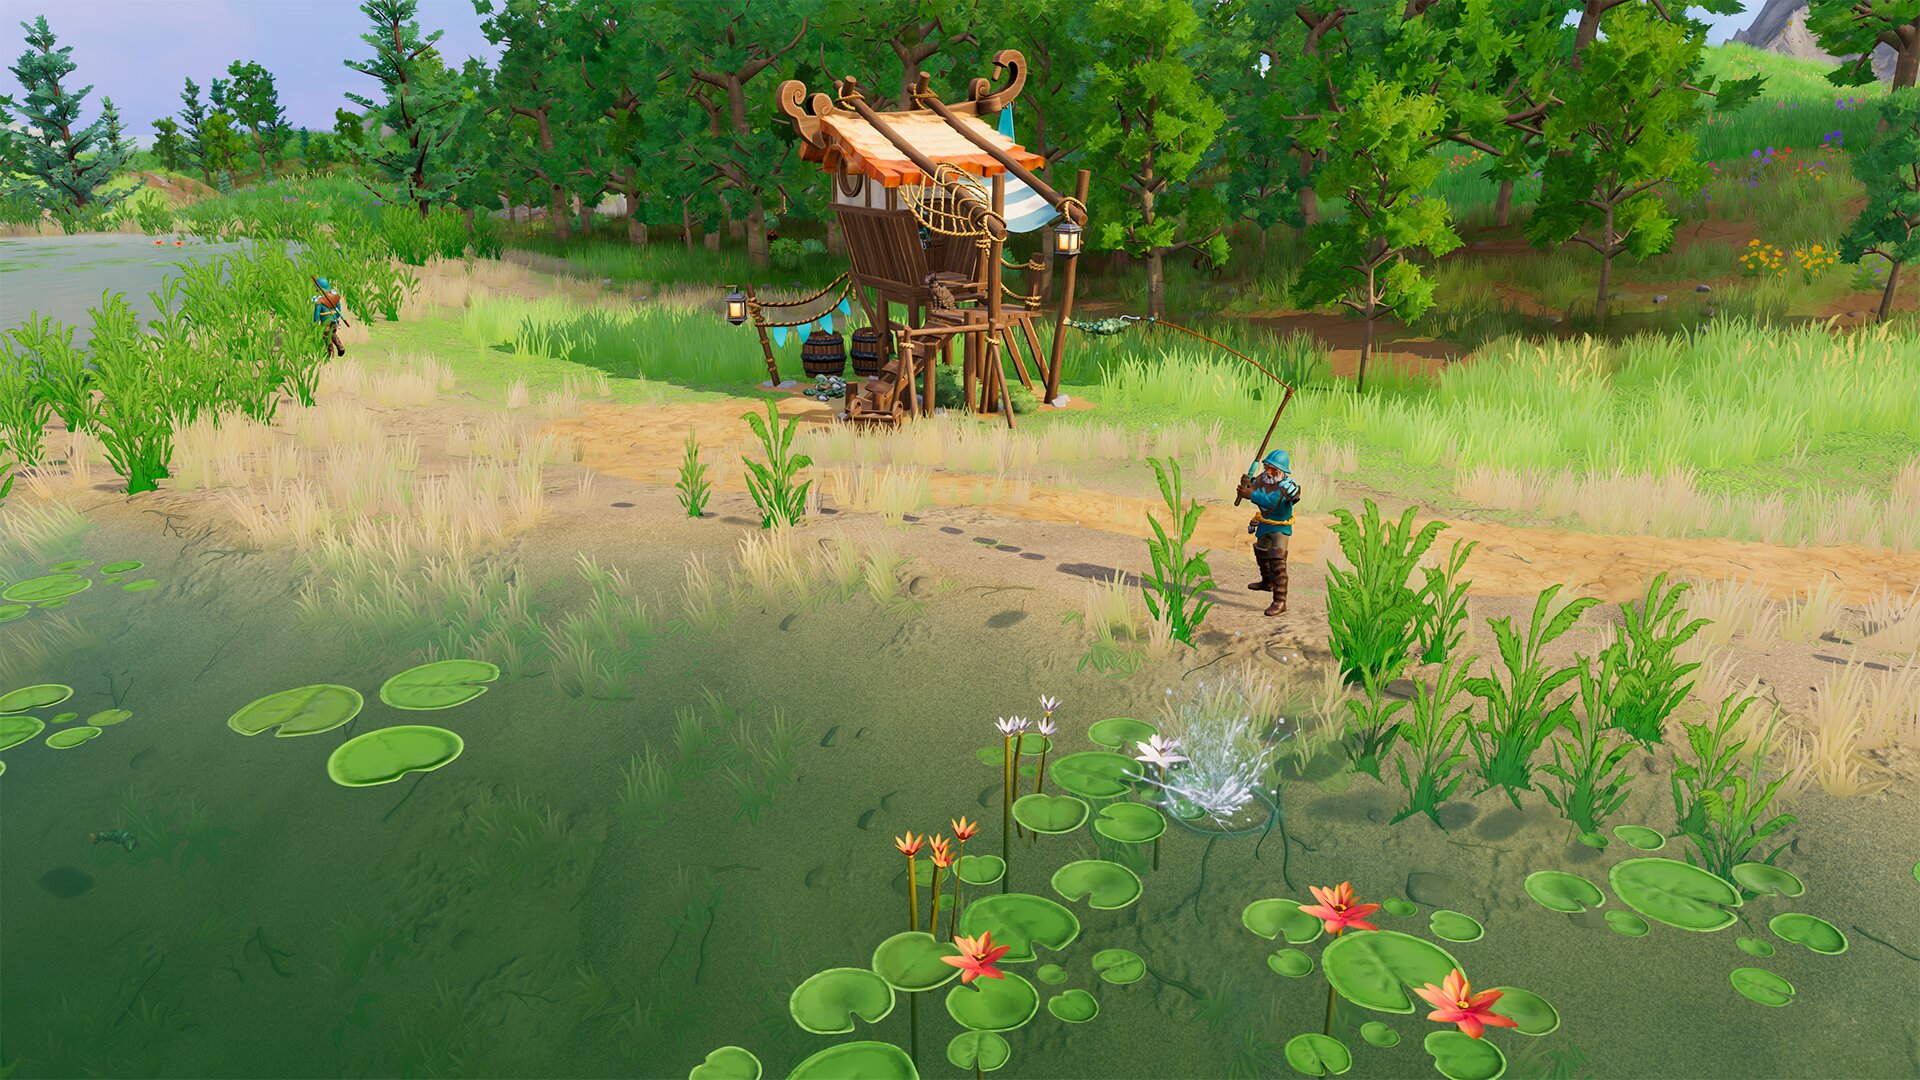 Fisherman's hut